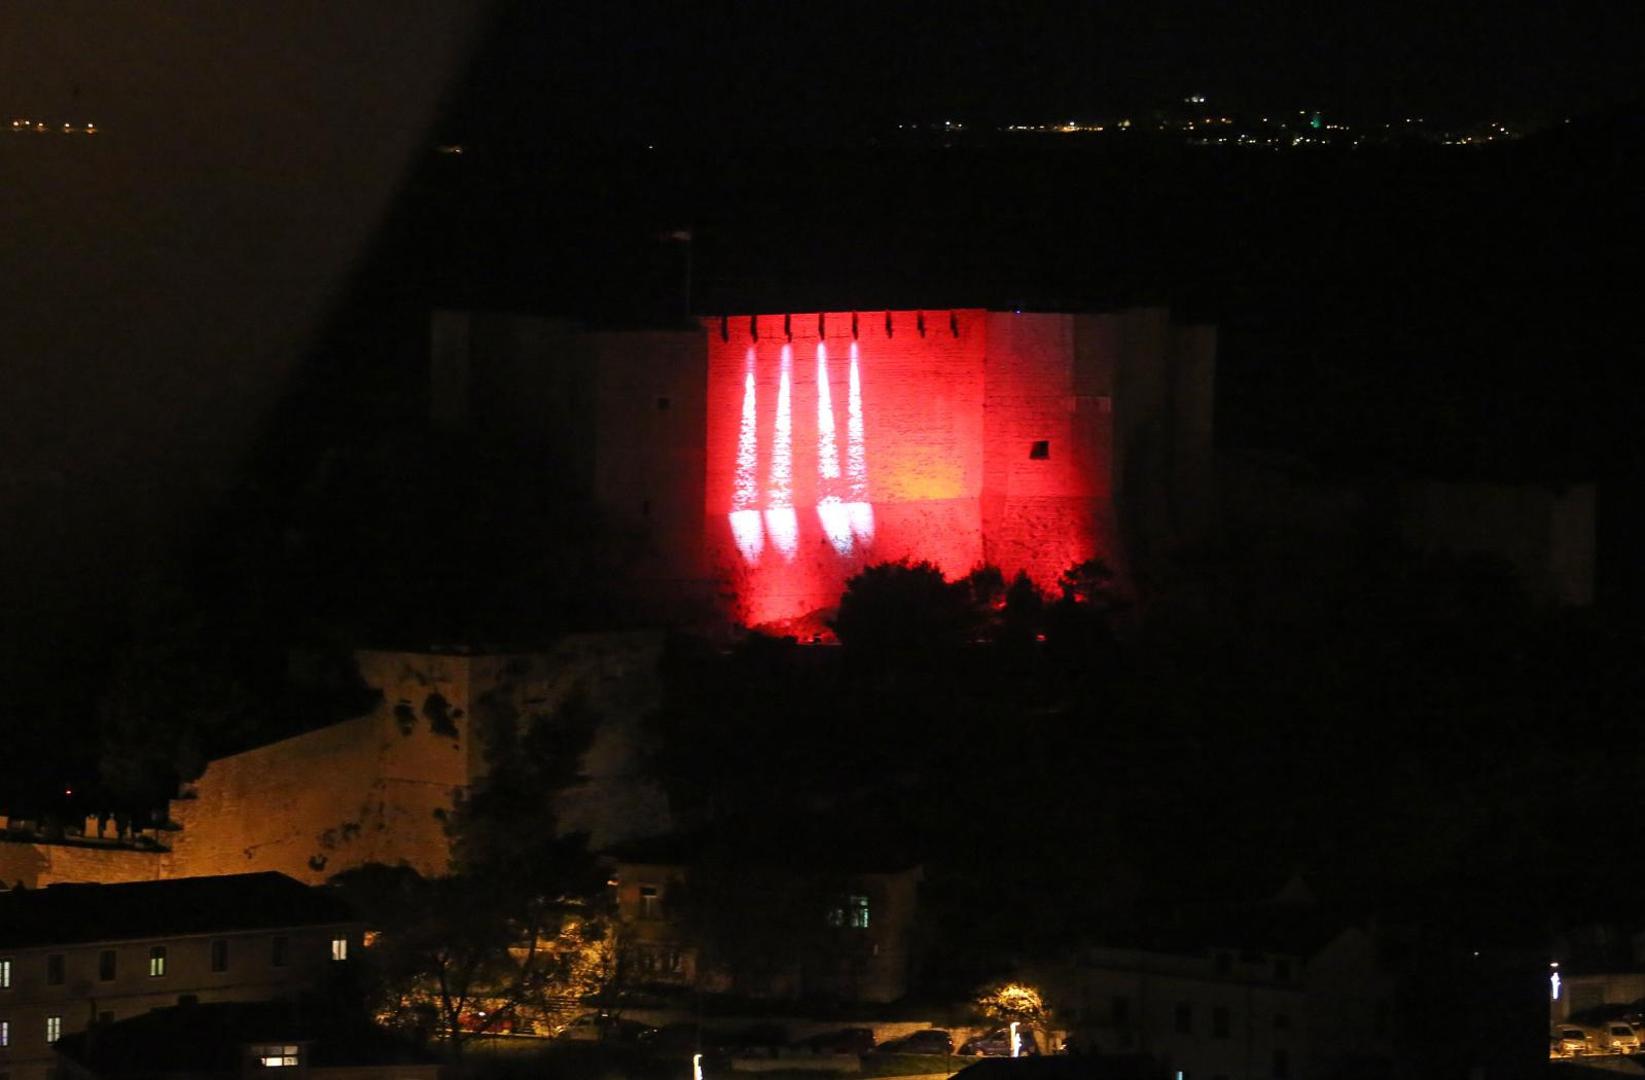 Ugodjaj je uvelicalo pjevacko drustvo Kolo božićnim napjevima, a znak za paljenje prve svijeće dao je gradonačelnik Željko Burić.

